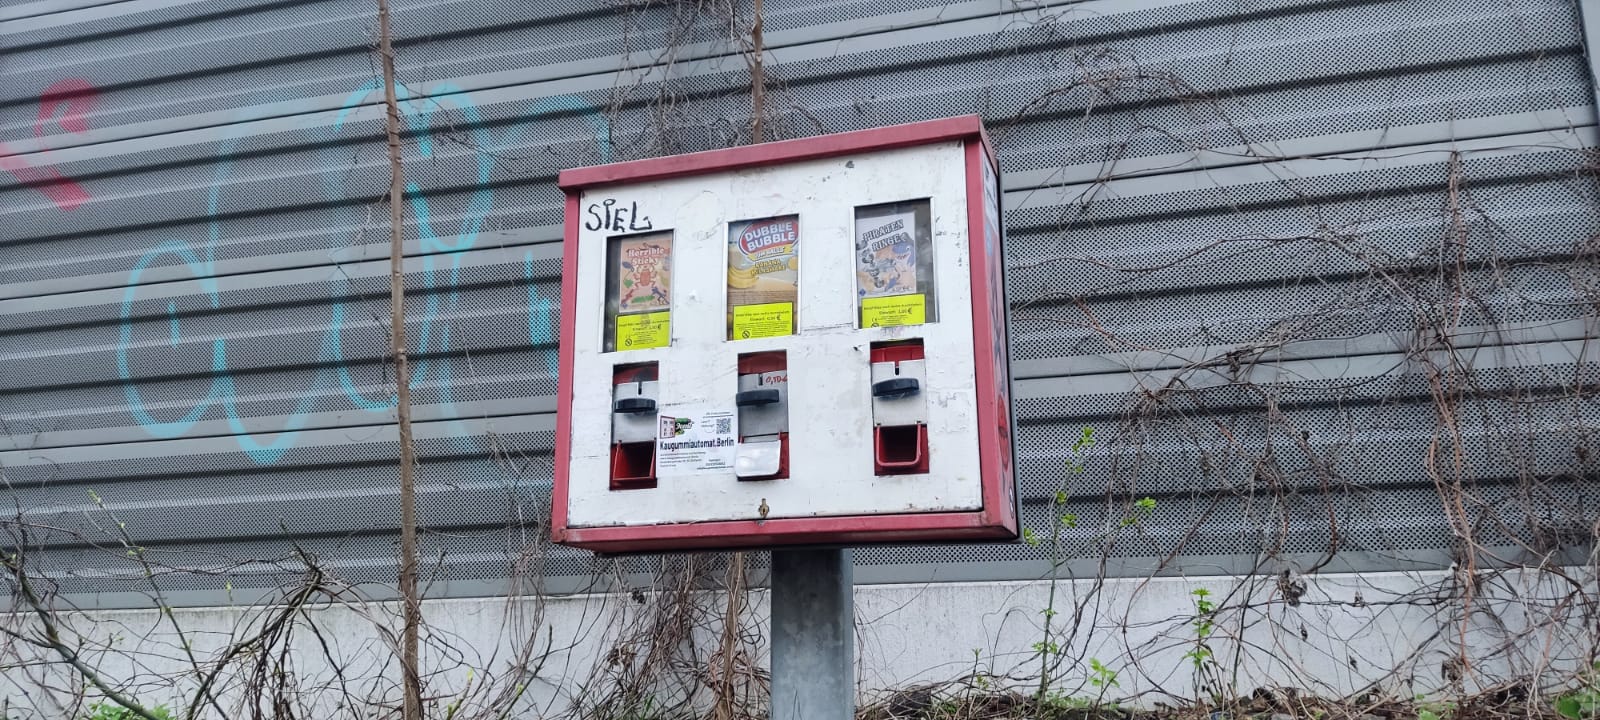 kaugummiautomat in pankow